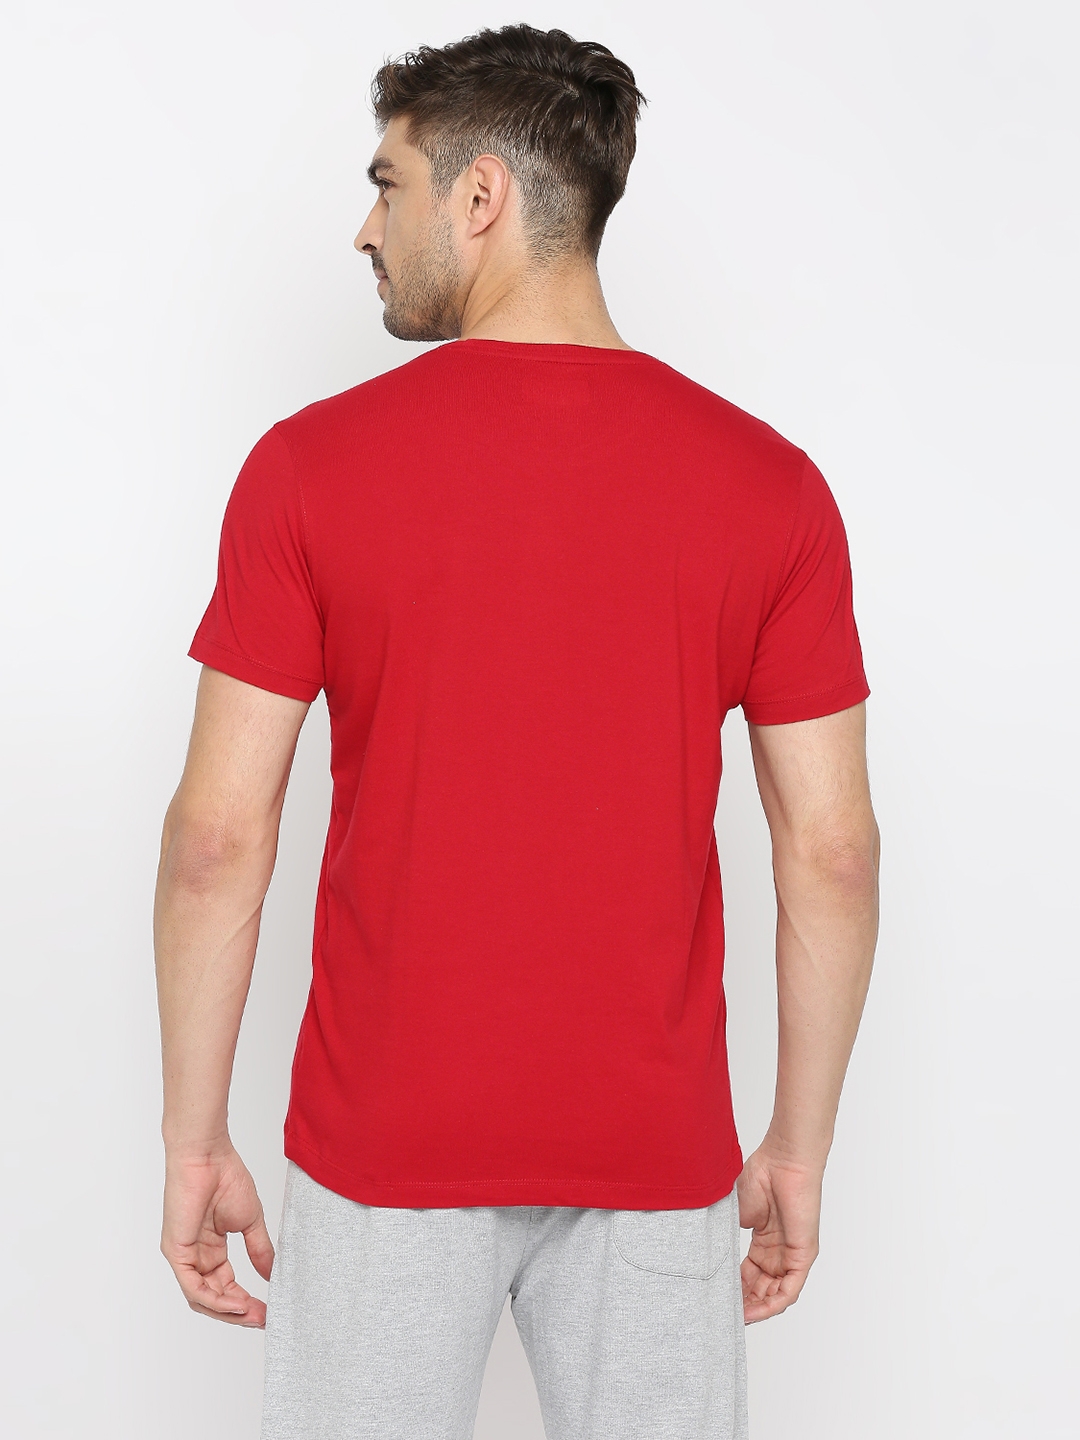 spykar | Underjeans by Spykar Men Deep Red Cotton Round Neck Printed Tshirt 3